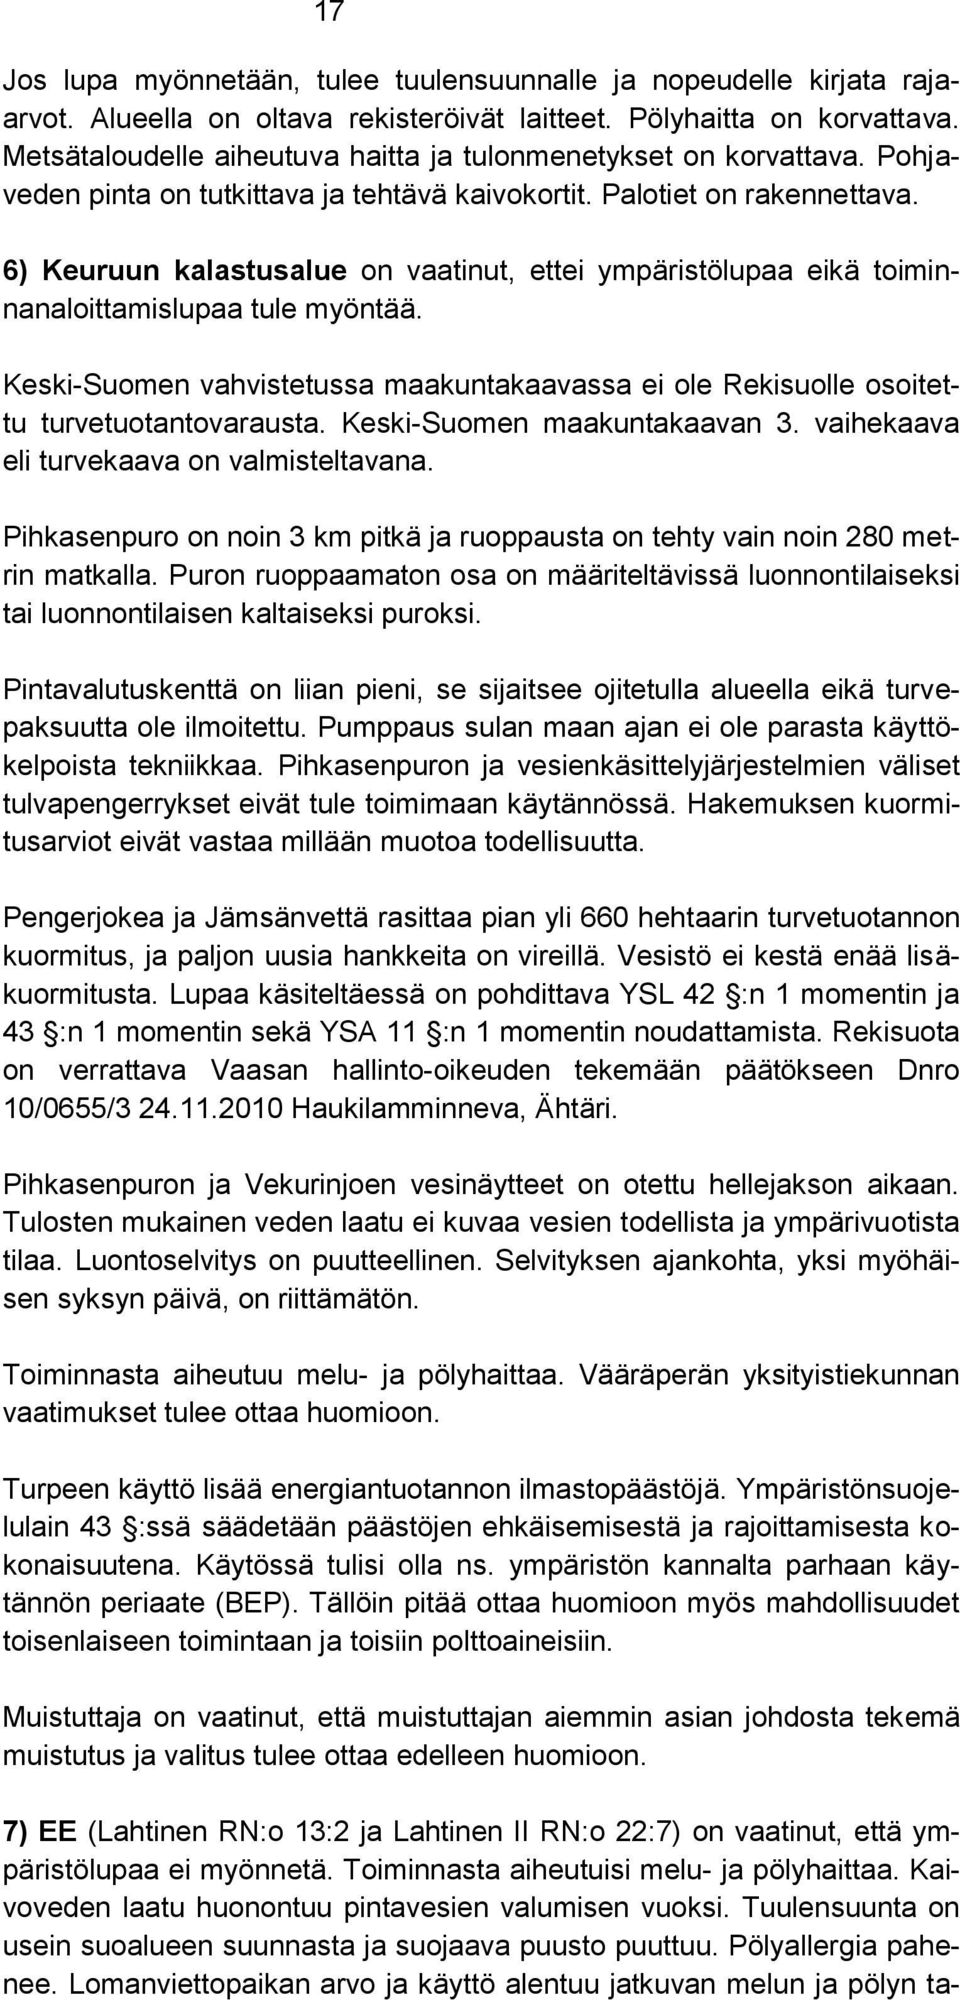 6) Keuruun kalastusalue on vaatinut, ettei ympäristölupaa eikä toiminnanaloittamislupaa tule myöntää. Keski-Suomen vahvistetussa maakuntakaavassa ei ole Rekisuolle osoitettu turvetuotantovarausta.